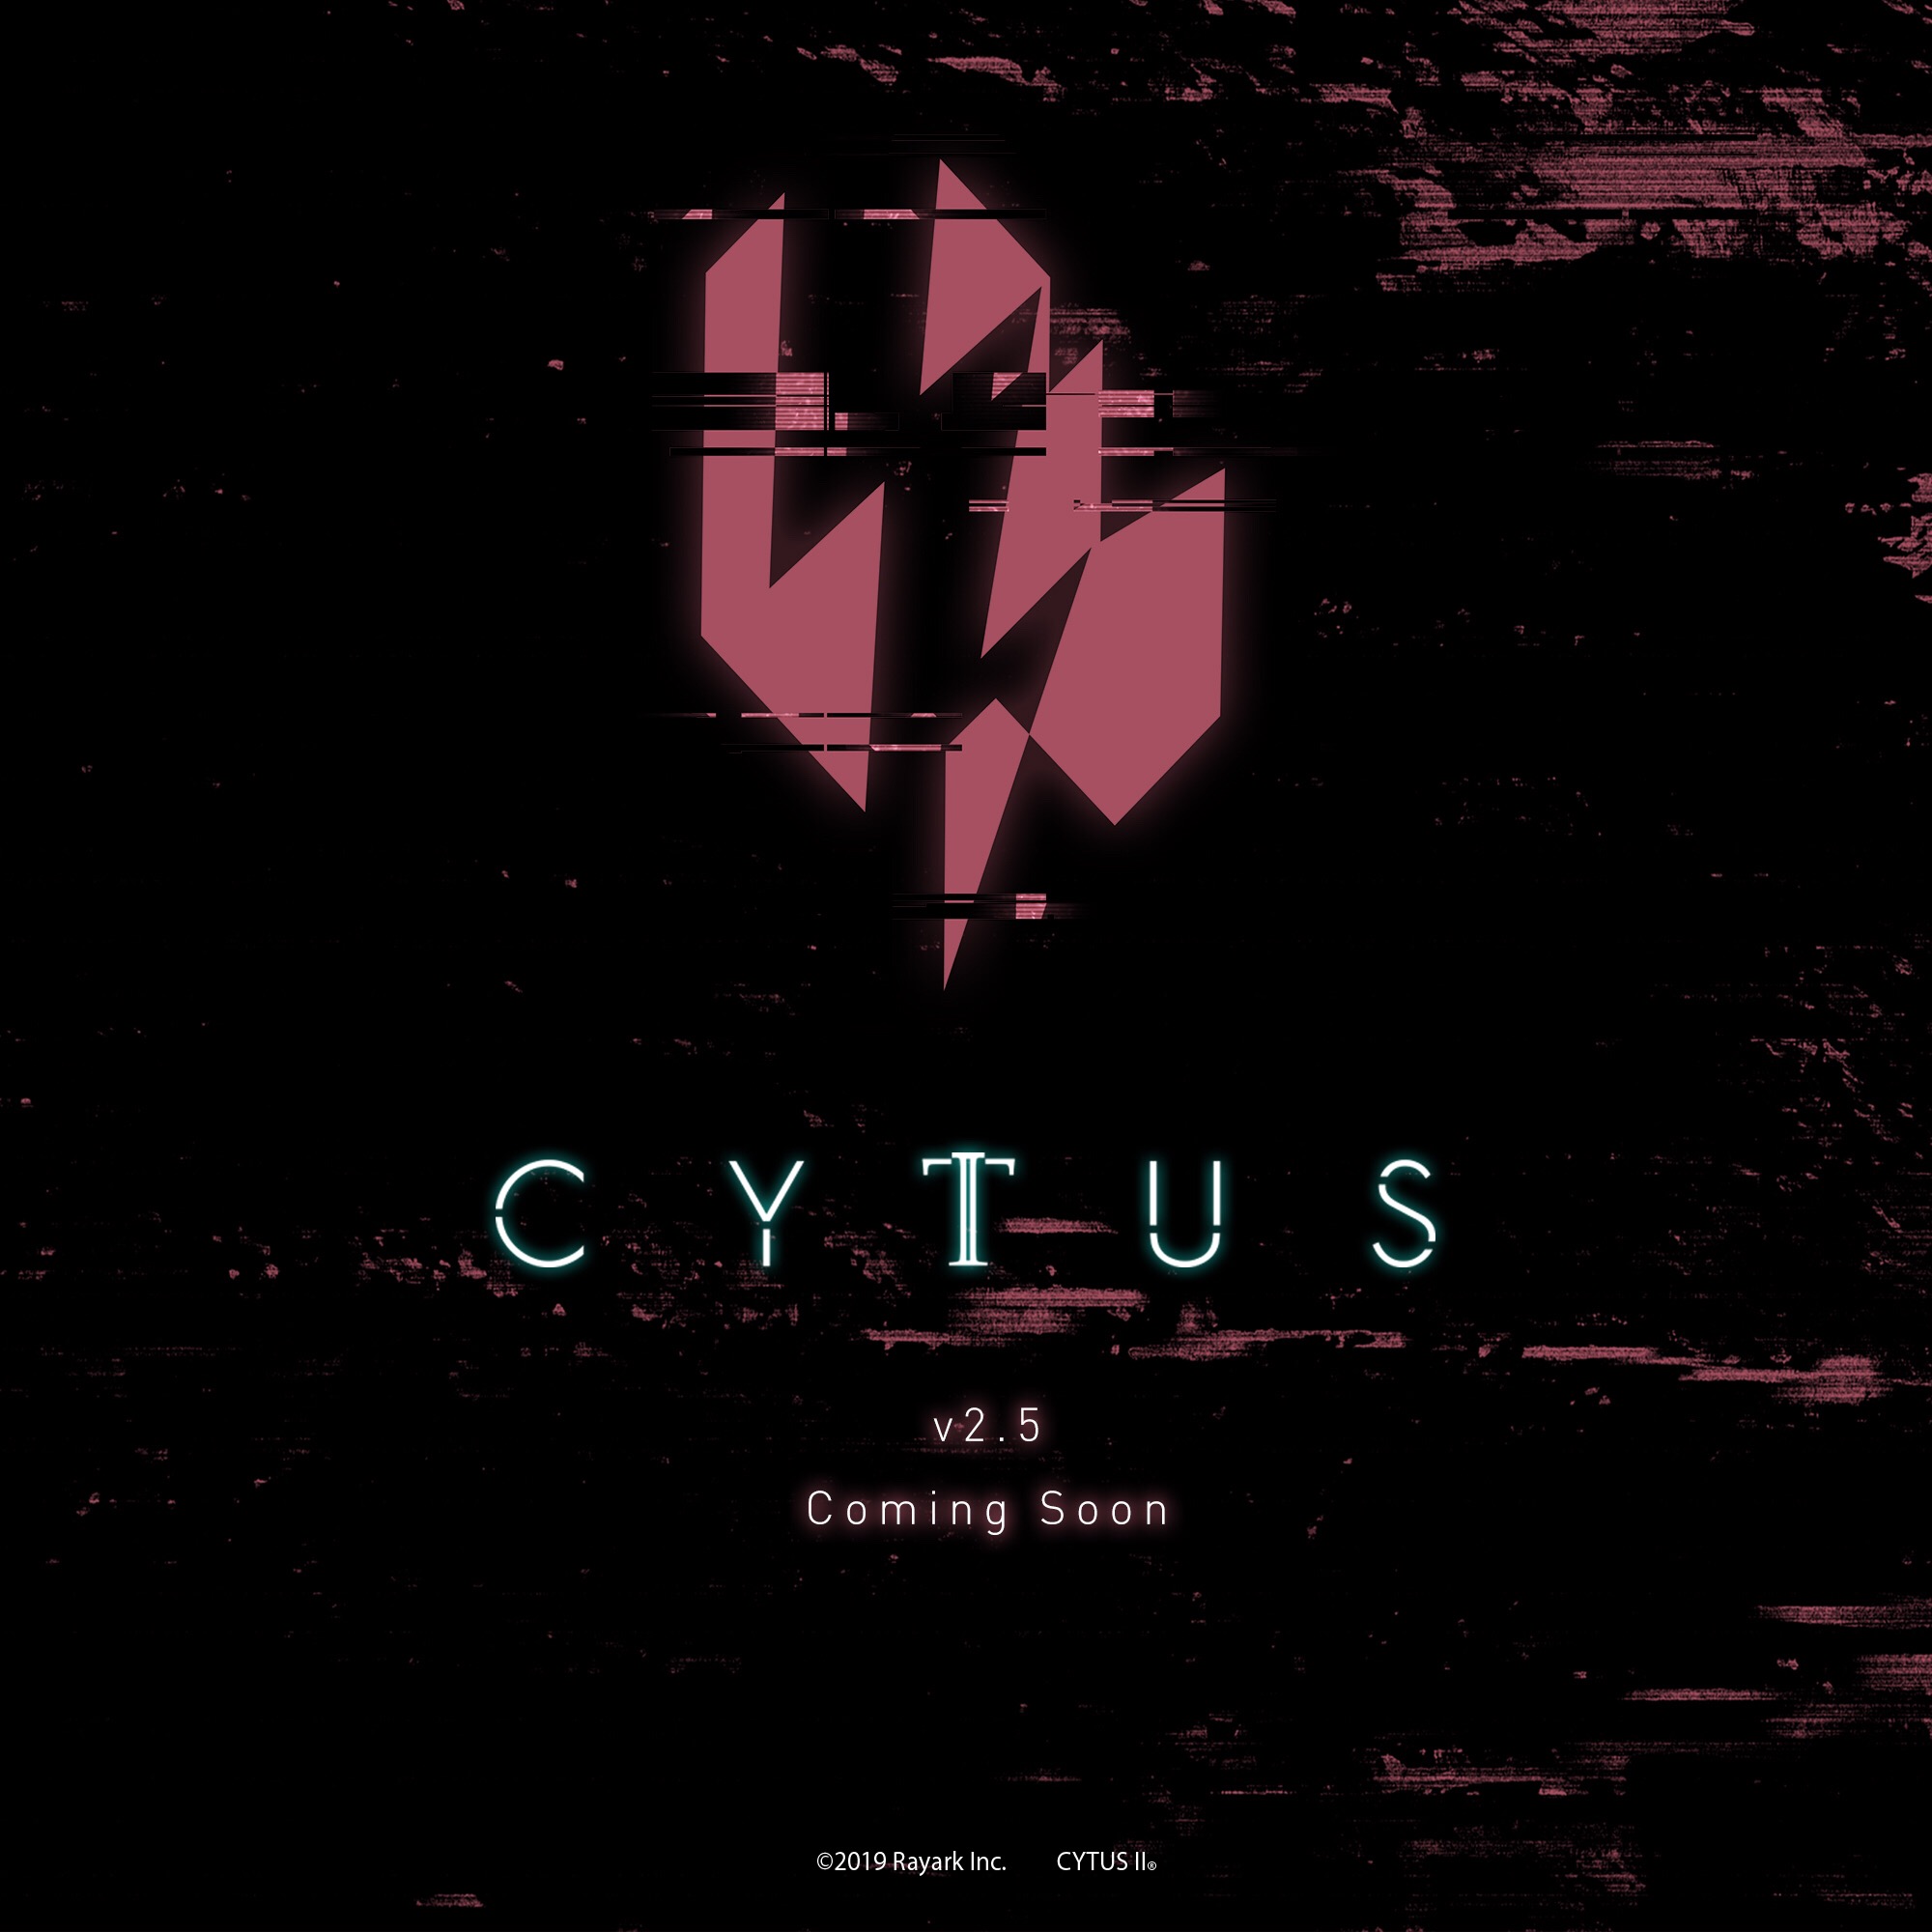 Cytus II v2.5 coming soon...